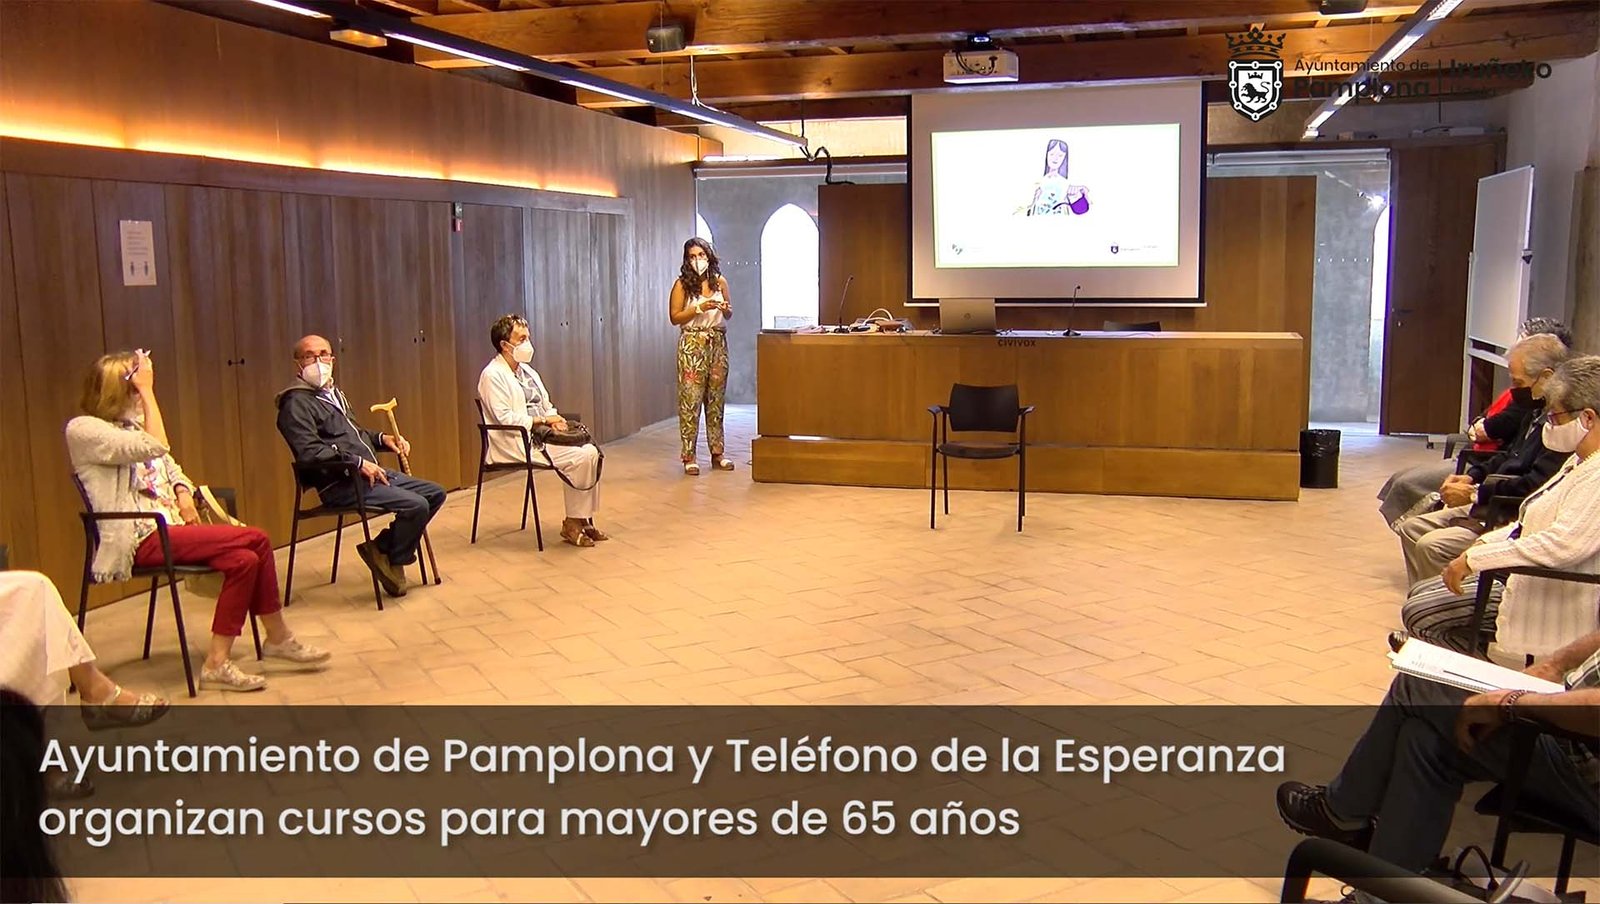 El Ayuntamiento lanza dos nuevos talleres para mayores de 65 años junto con el Teléfono de la Esperanza sobre comunicación interpersonal y gestión del estrés